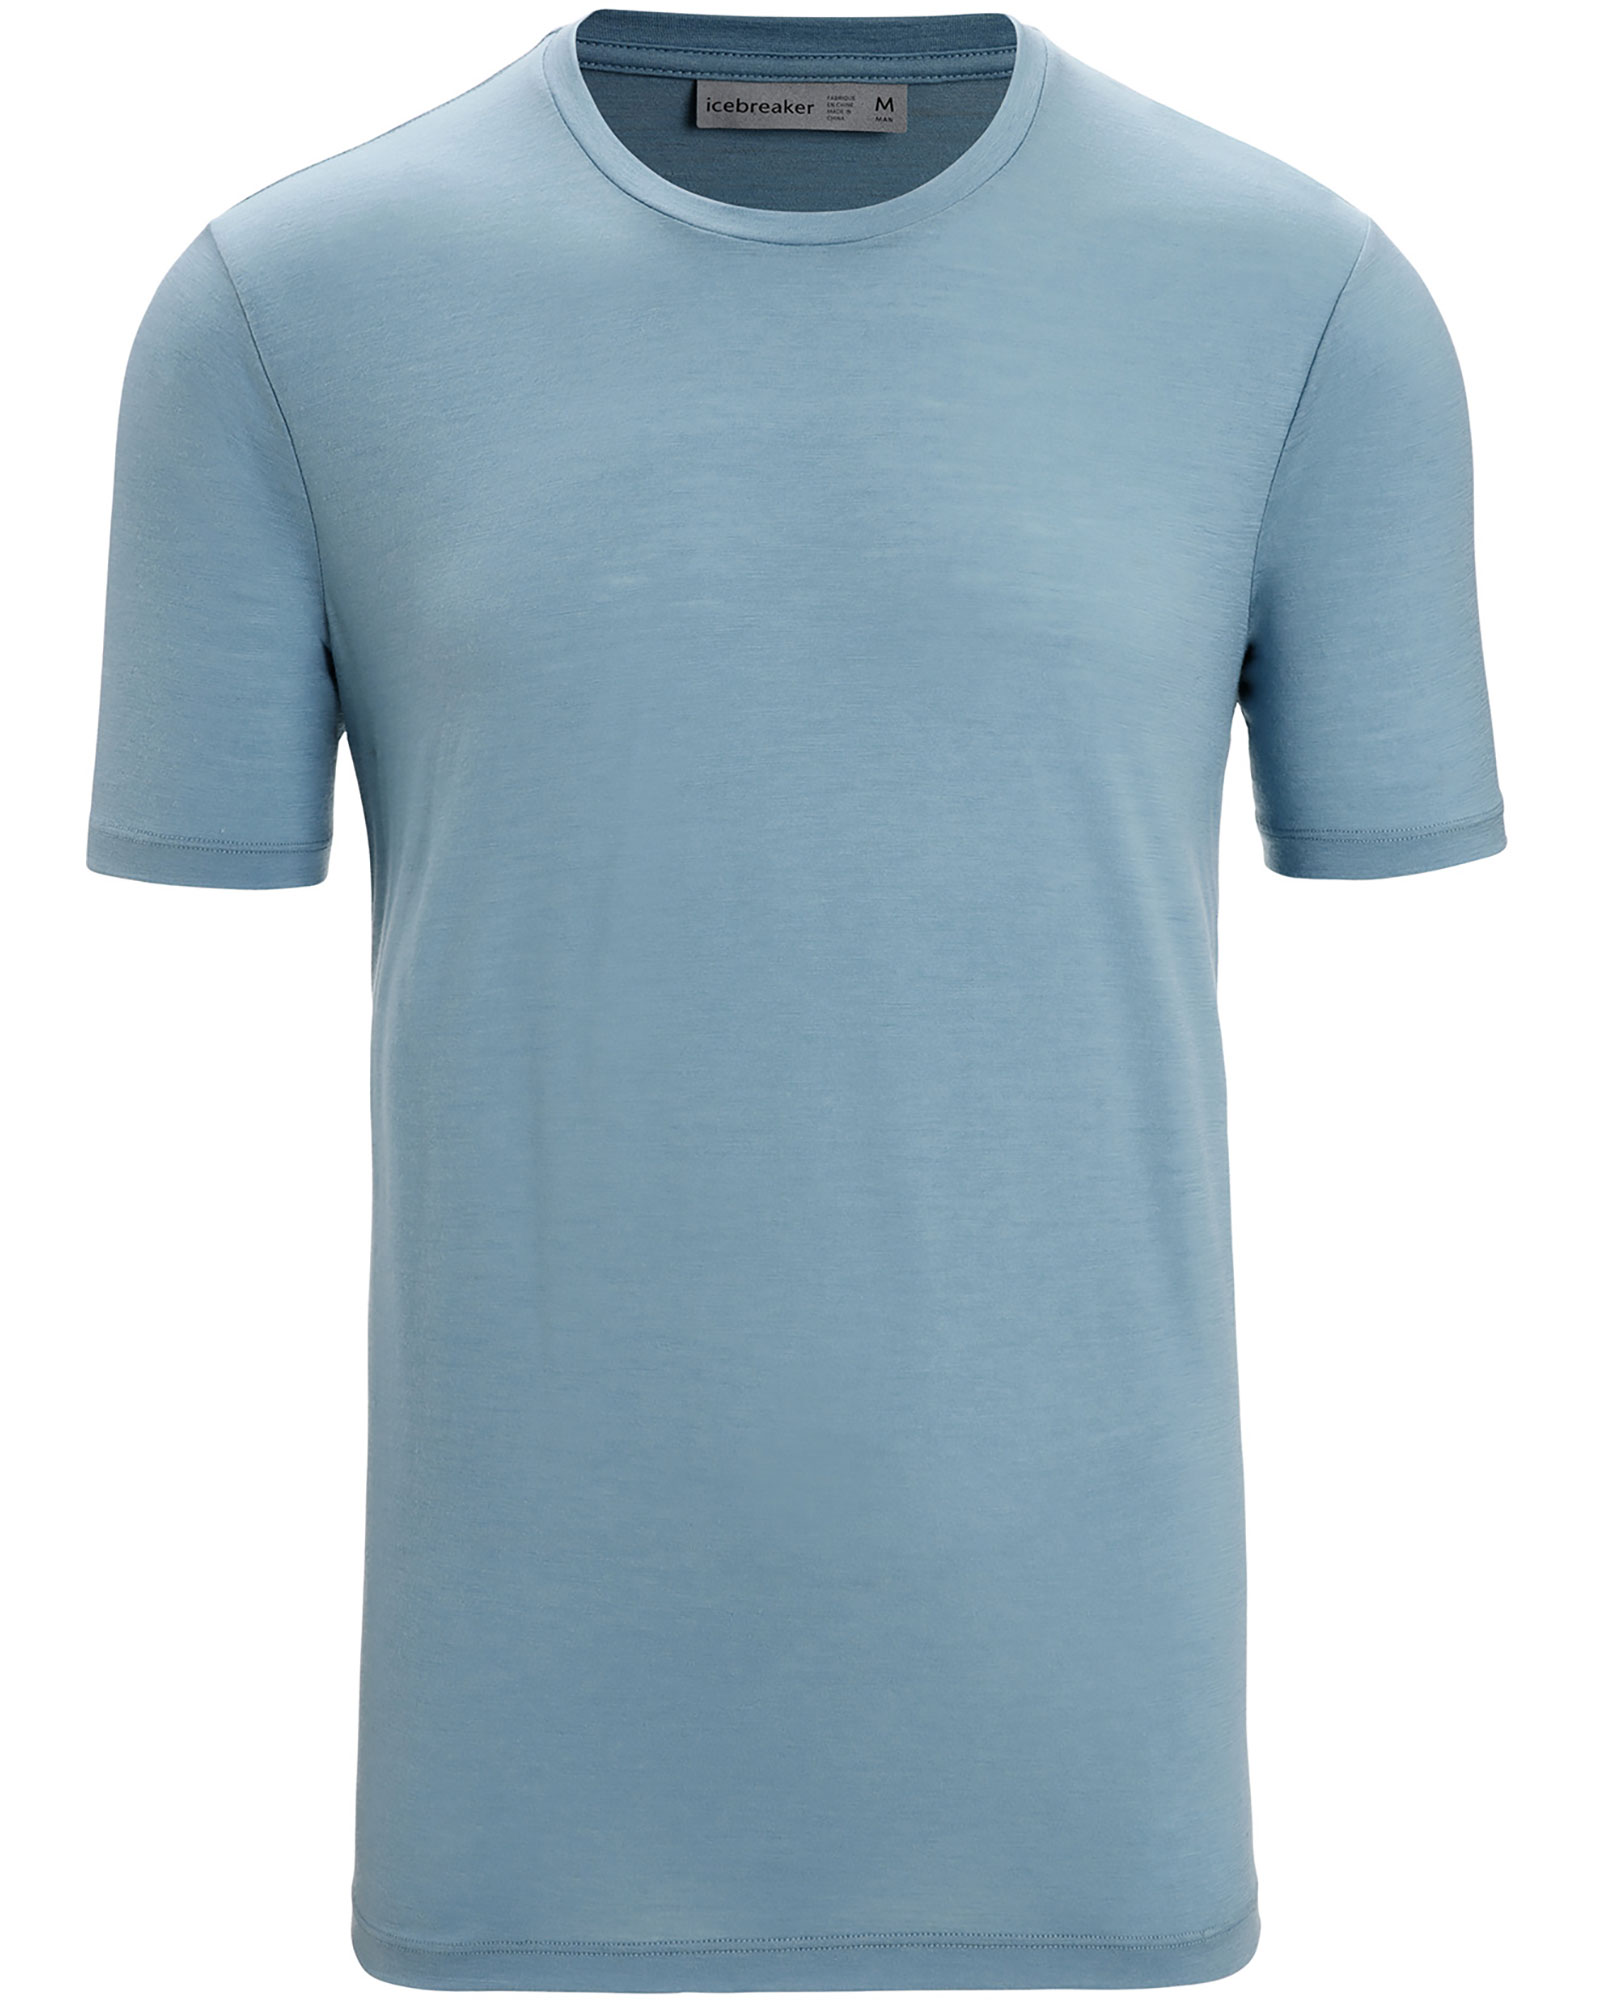 icebreaker Men’s Tech Lite 2 T Shirt - Astral Blue S